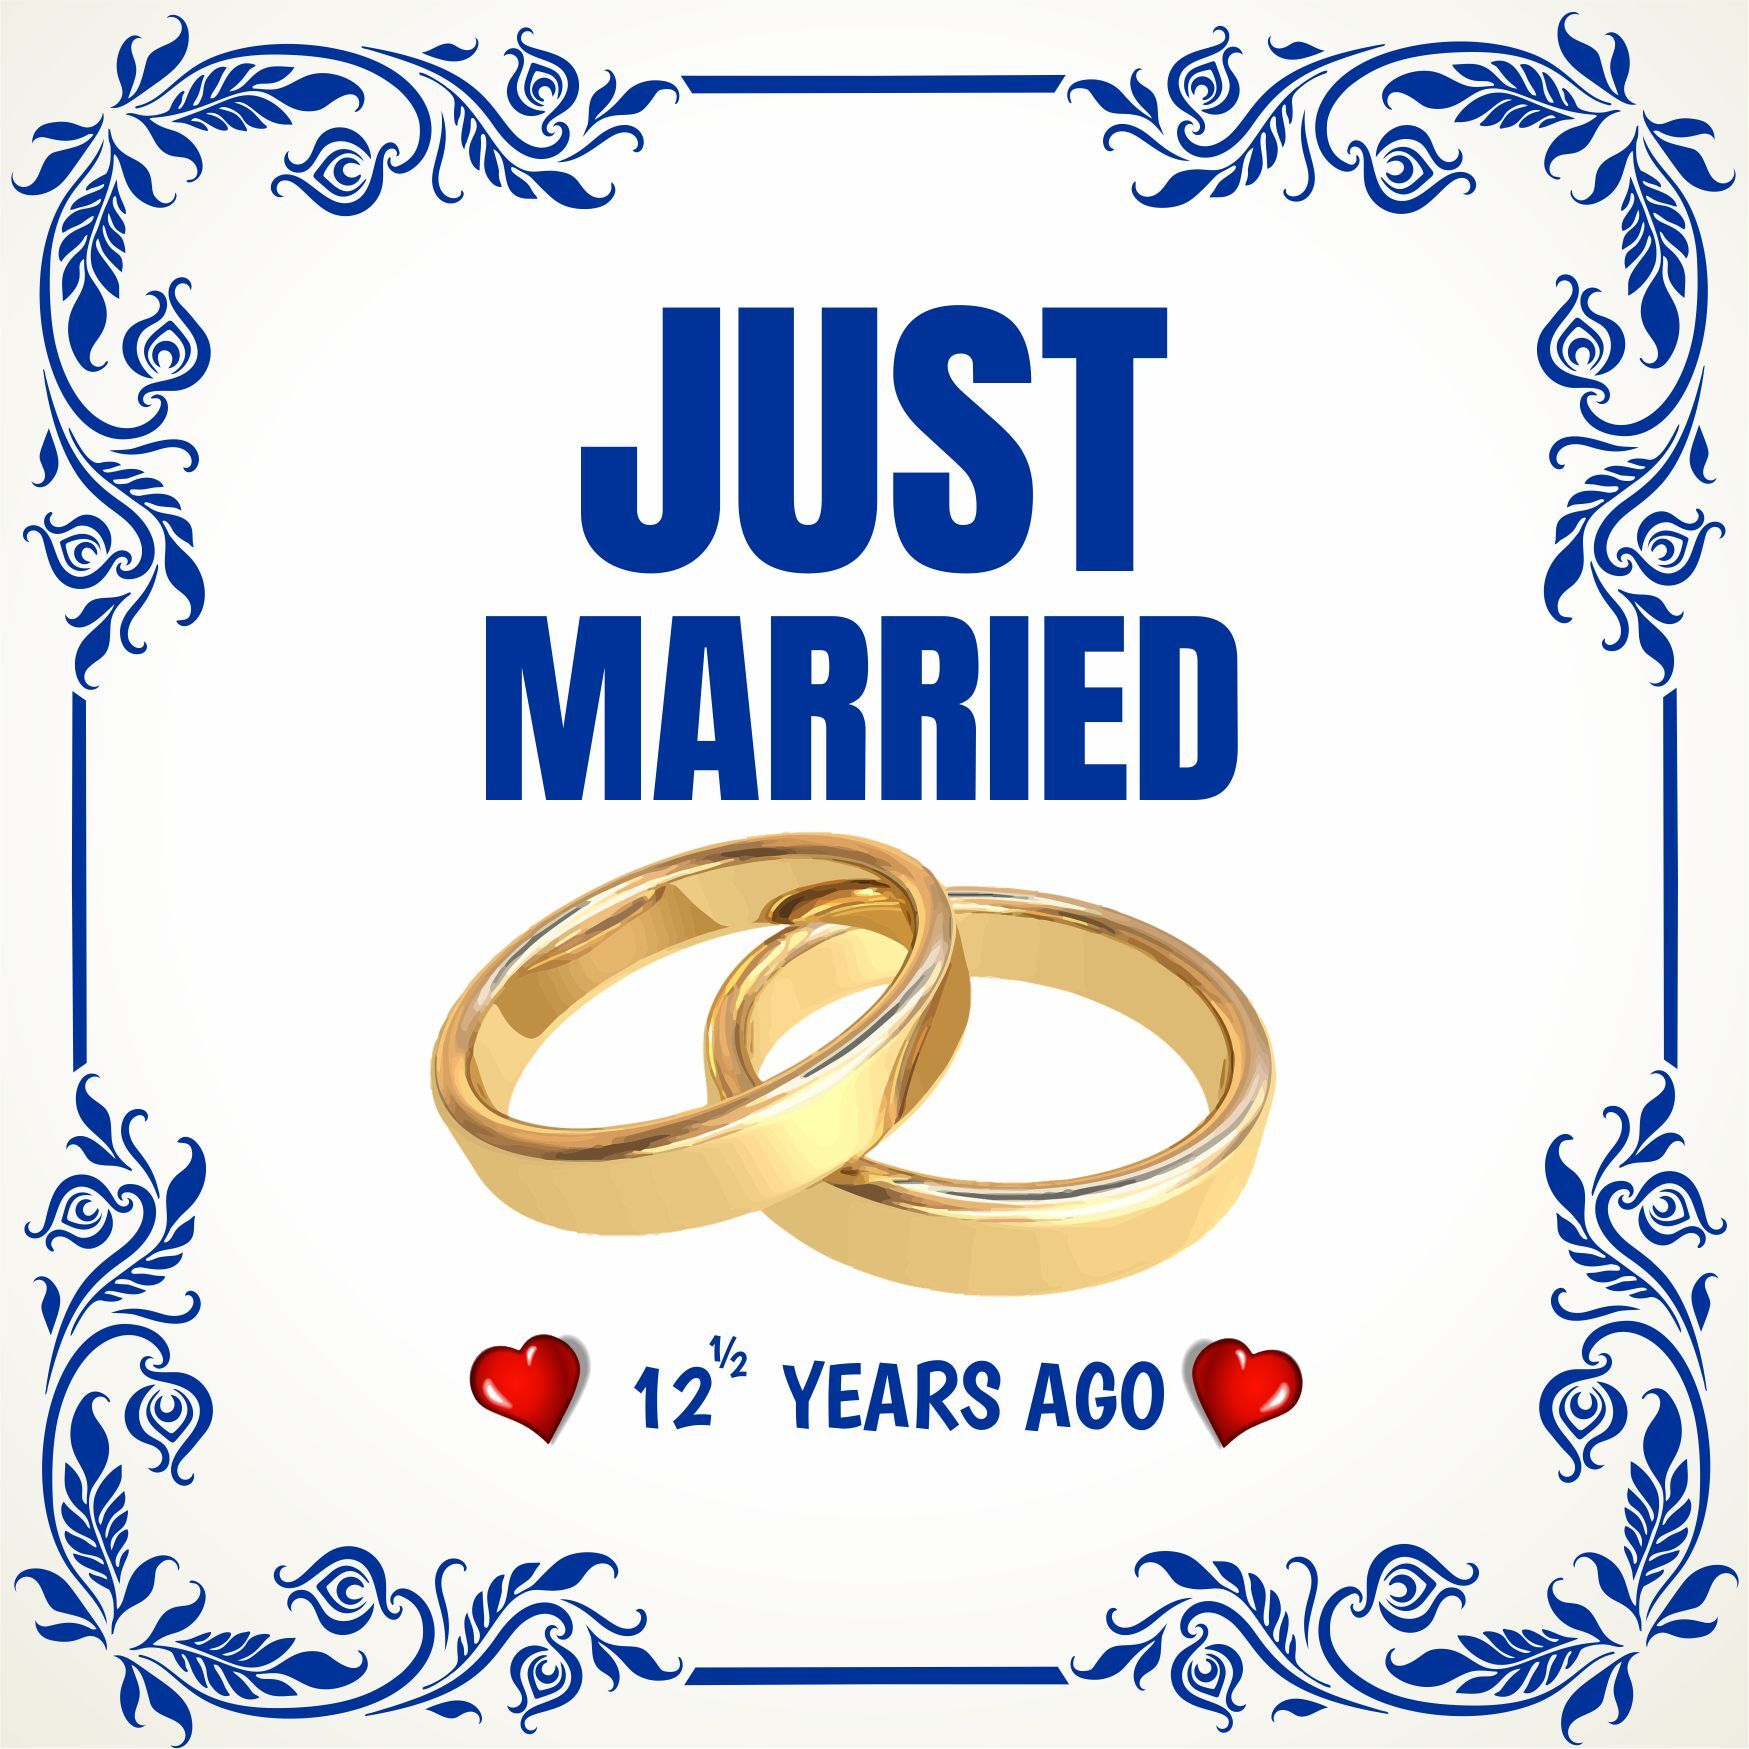 Tegel just married 12 halve years ago pas getrouwd 12 en half jaar geleden